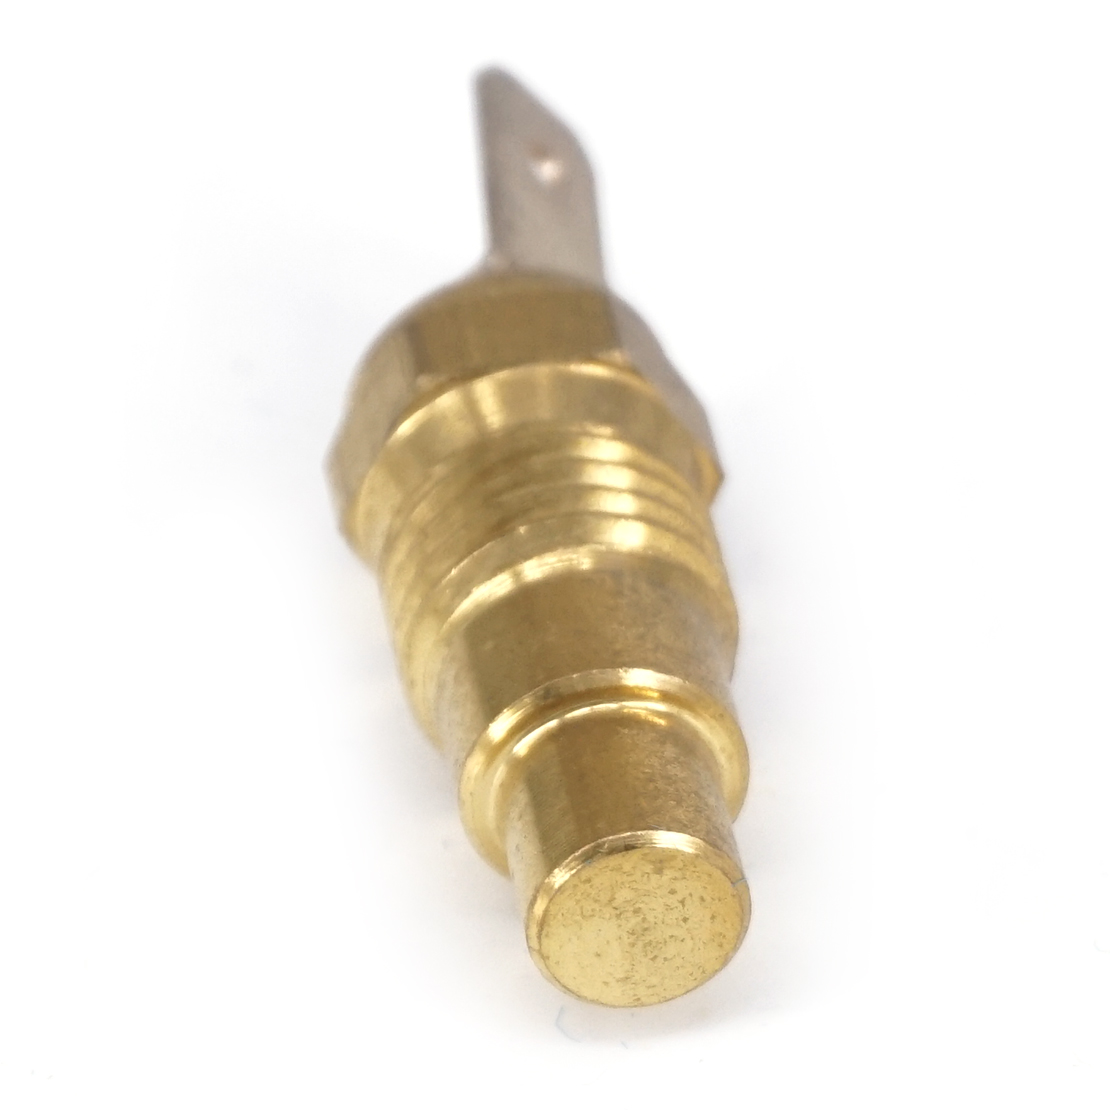 Dwcx metal guld motor kølevæske vandtemperatur sensor sender sender til nissan  g20 200sx pathfinder infinity 2508089907